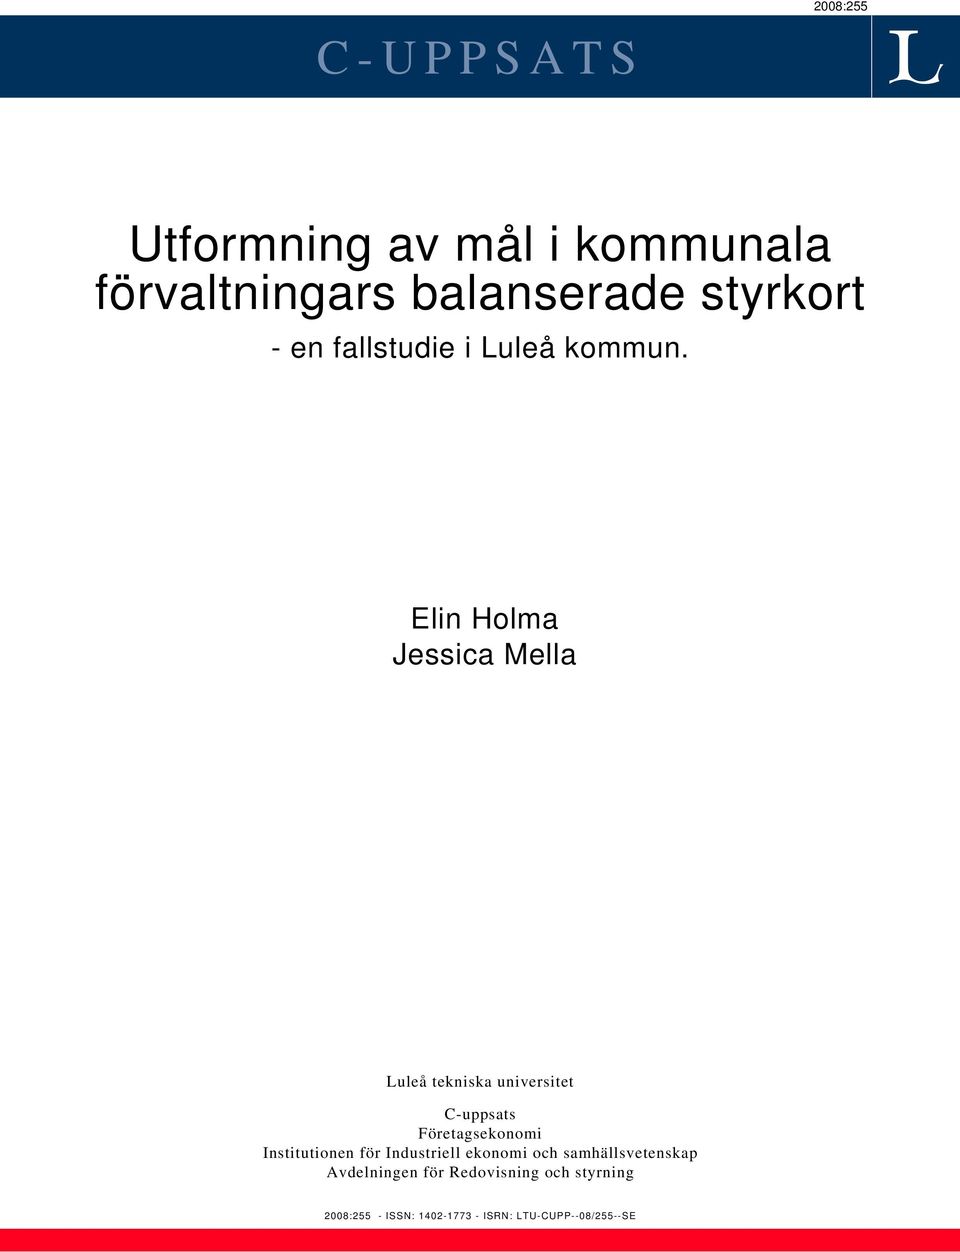 Elin Holma Jessica Mella Luleå tekniska universitet C-uppsats Företagsekonomi